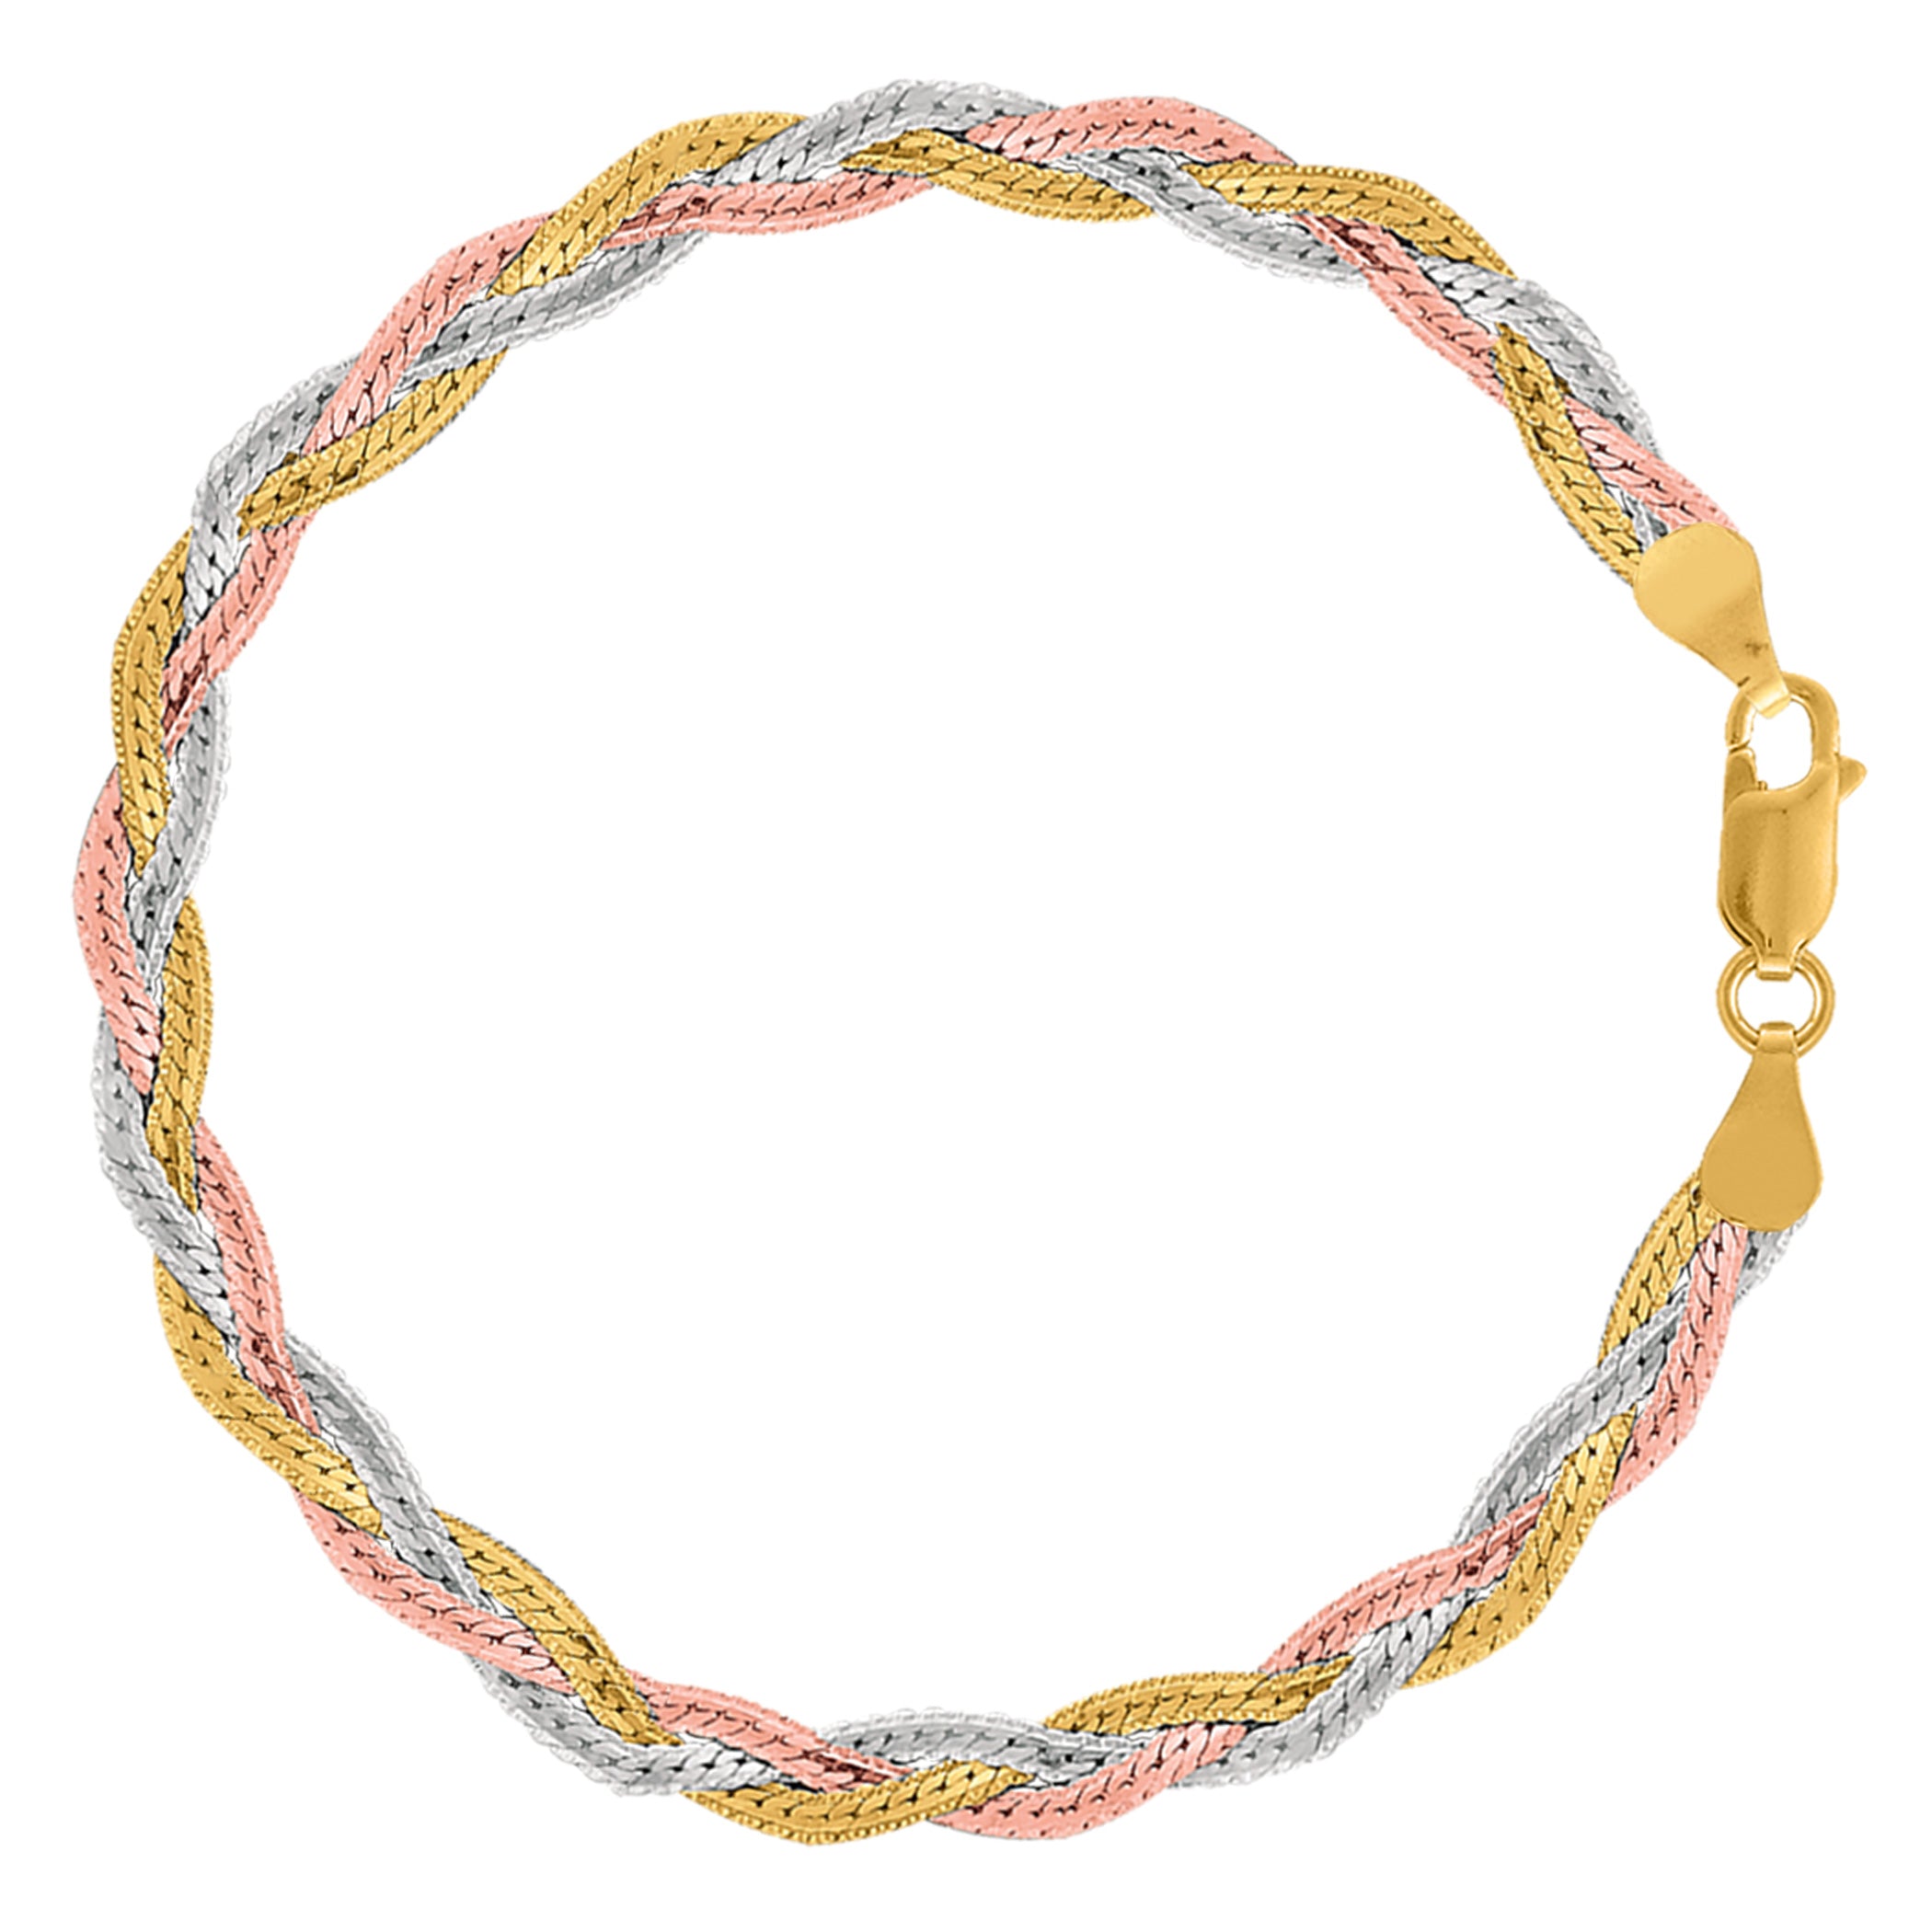 Tobillera con cadena de serpiente trenzada tricolor en plata de ley, joyería fina de diseño de 10" para hombres y mujeres